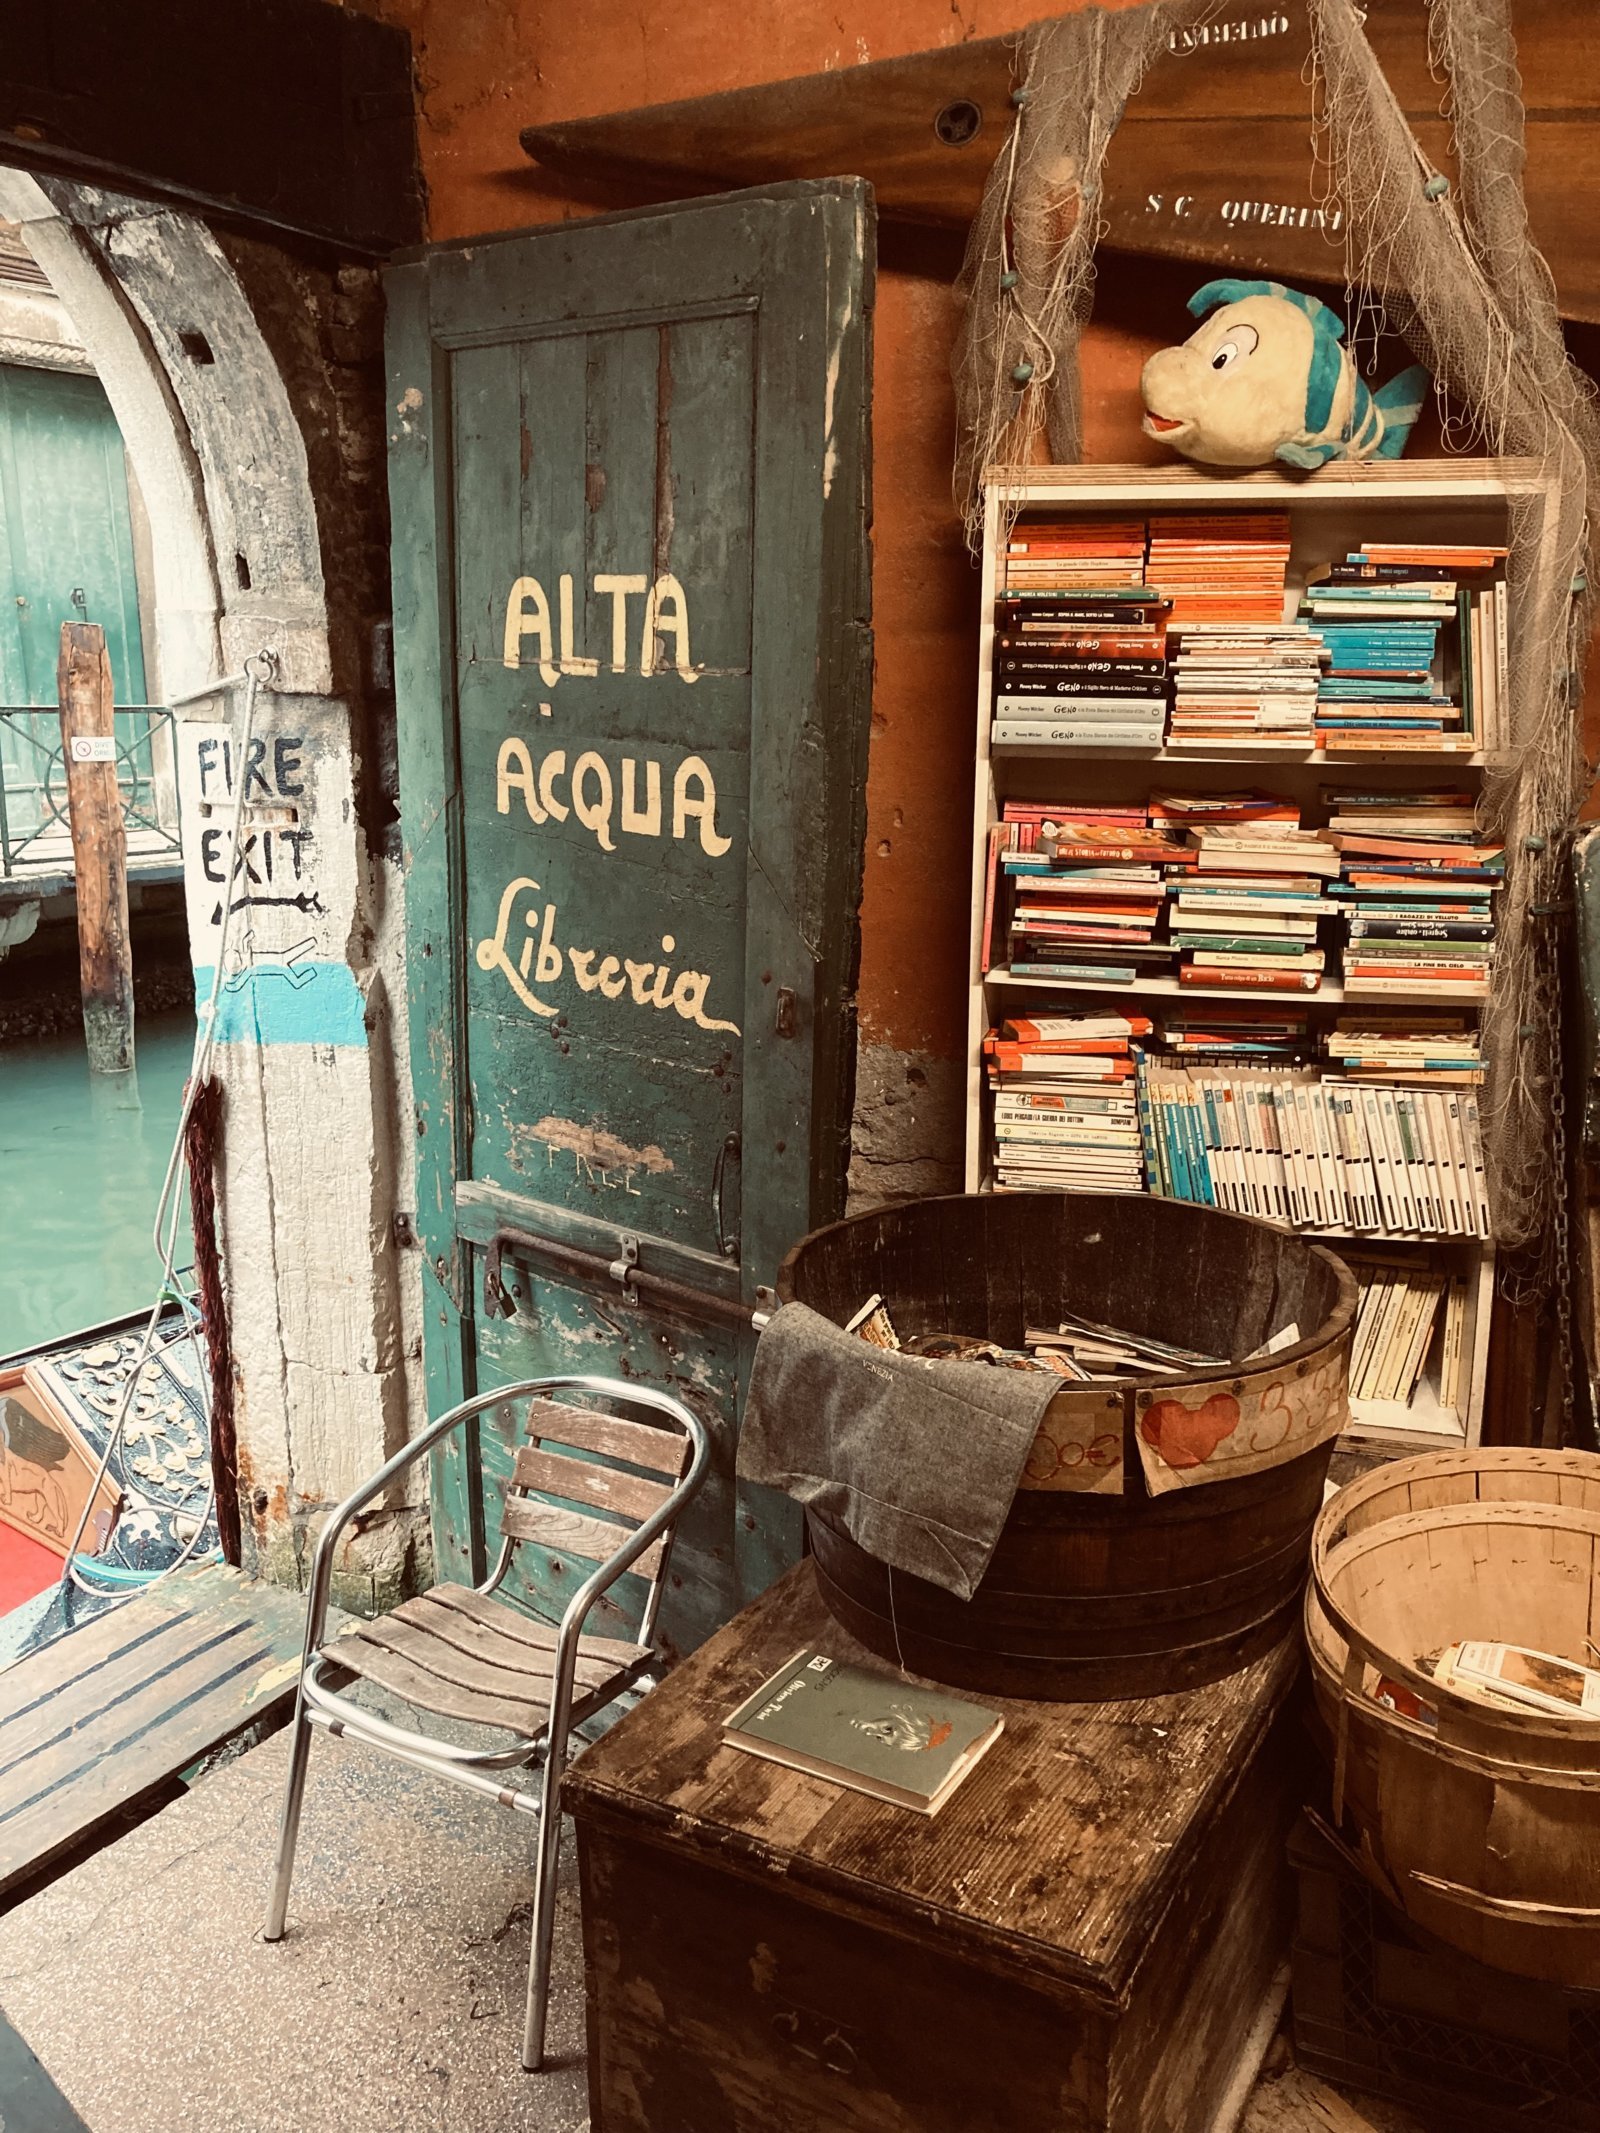 Libreria Acqua Alta - eine besondere Buchhandlung